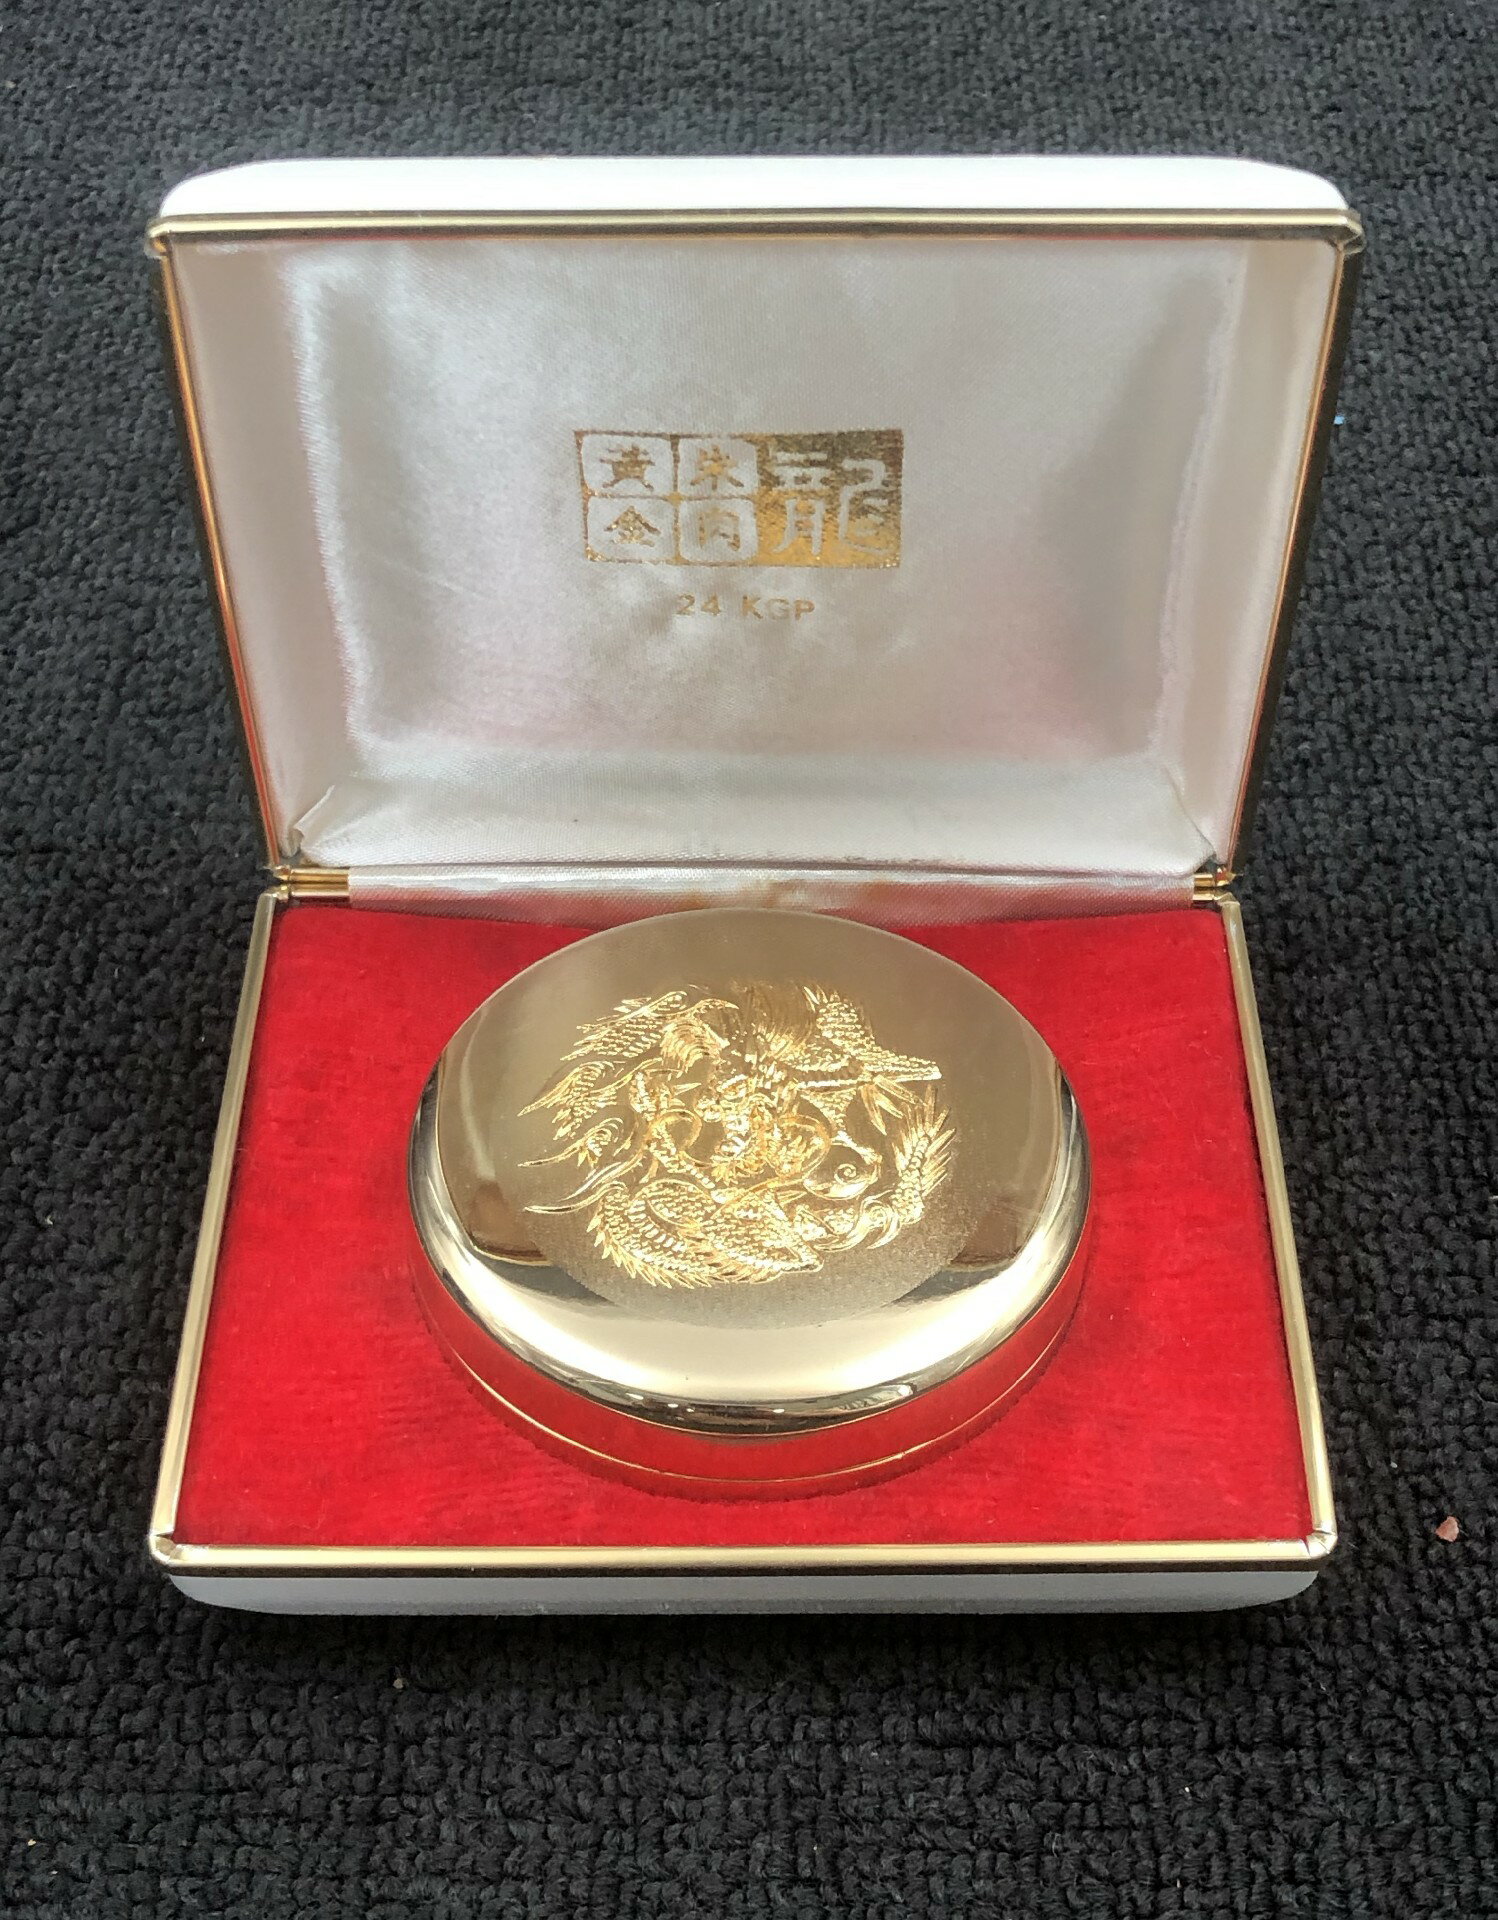 日本舶來 黃金朱肉 24KGP鍍金盒 龍紋 練朱肉 印泥